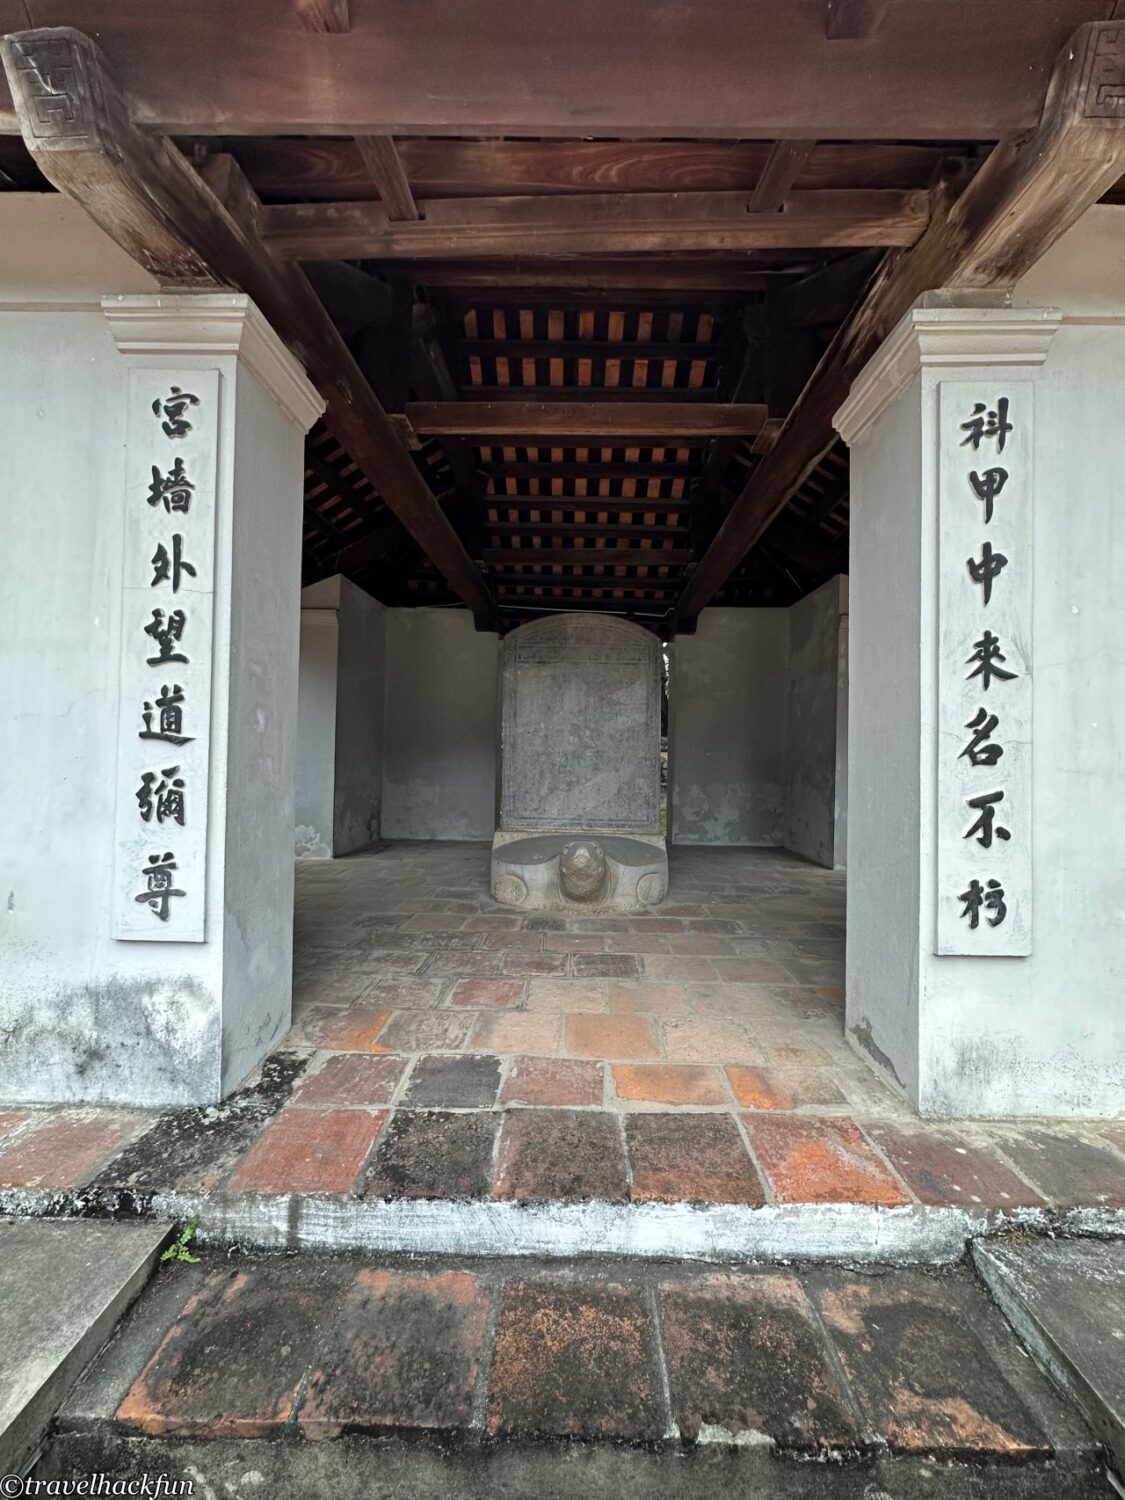 temple of literature,河內文廟 7